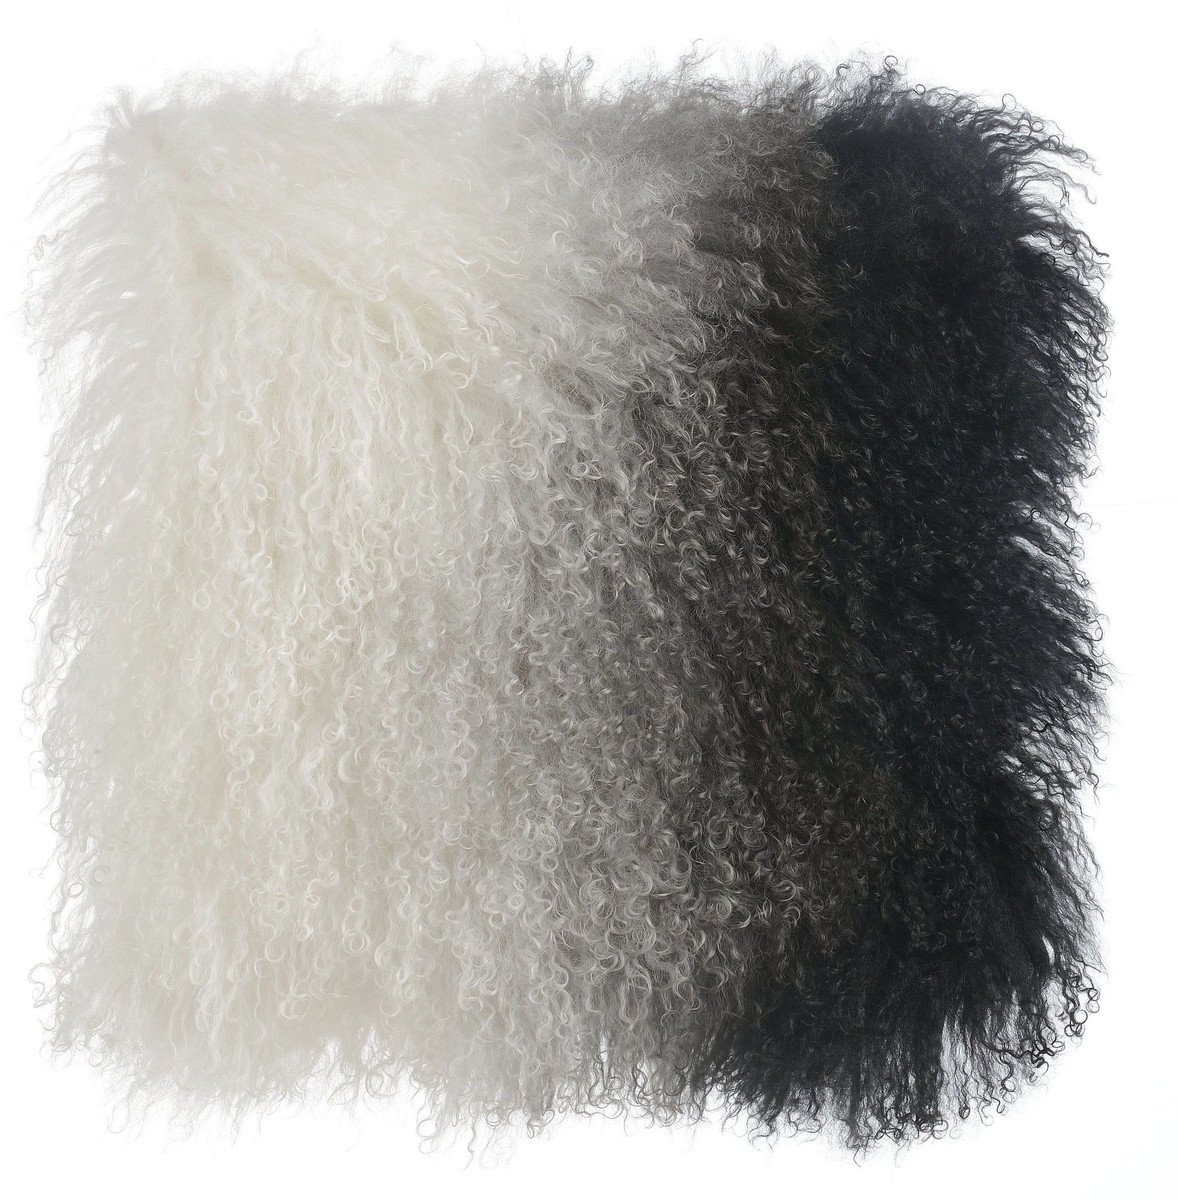 Tibetan Sheep Pillow White to Black - Image 0